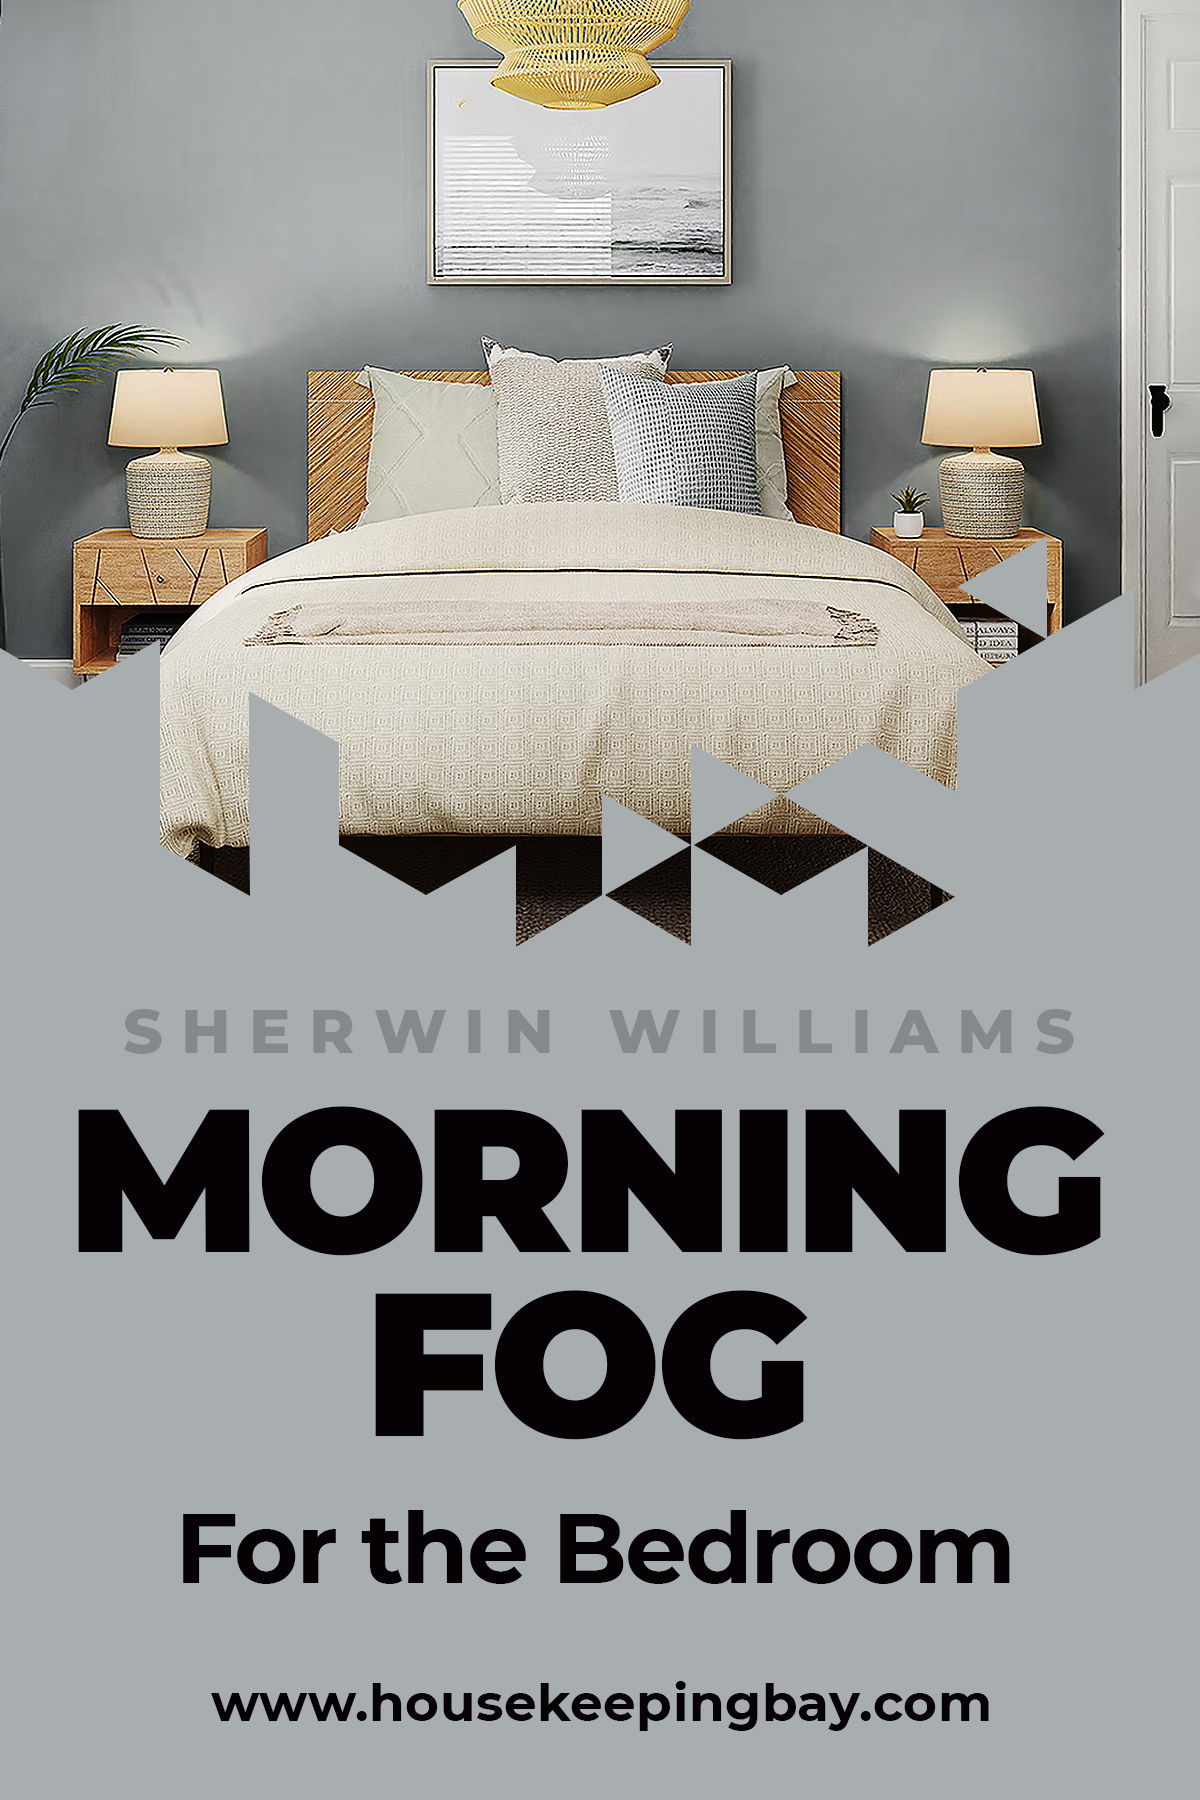 Morning fog for the Bedroom